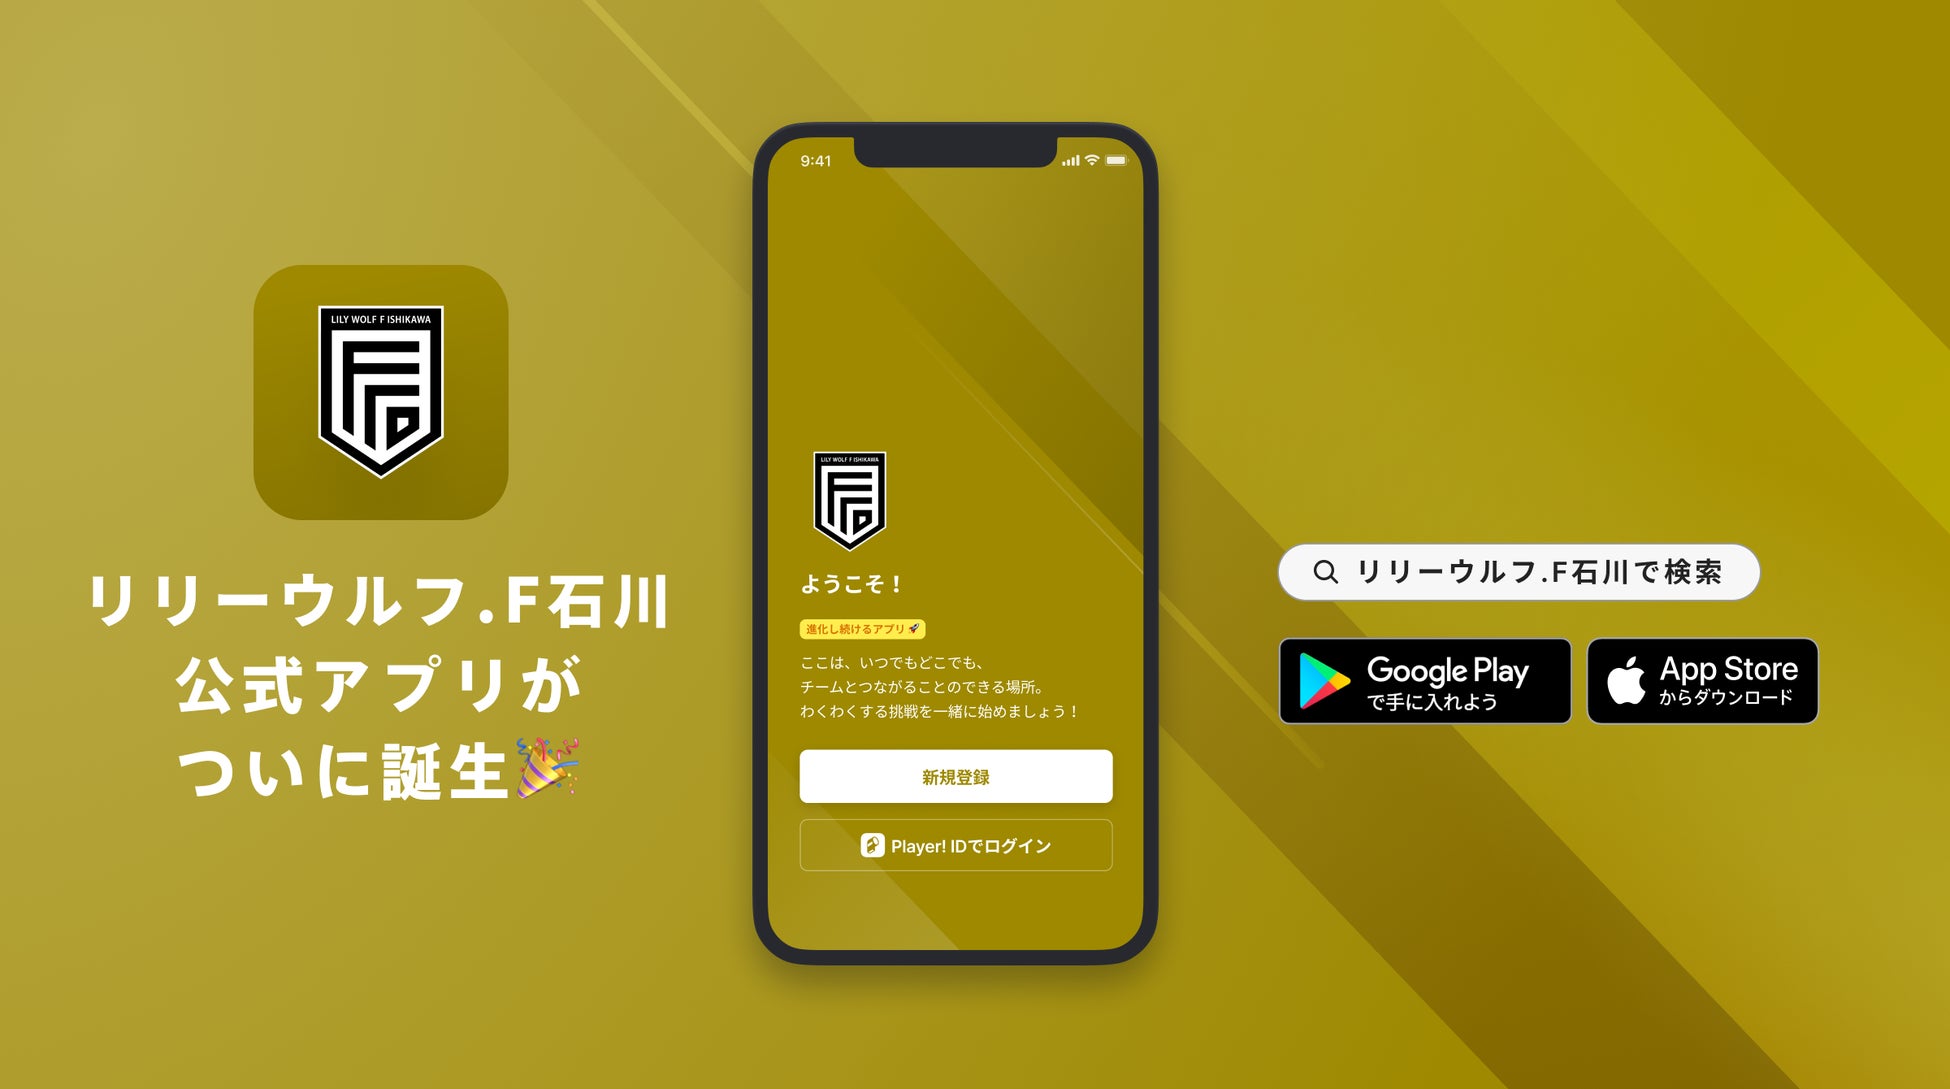 リリーウルフ.F石川 公式アプリリリースのお知らせ